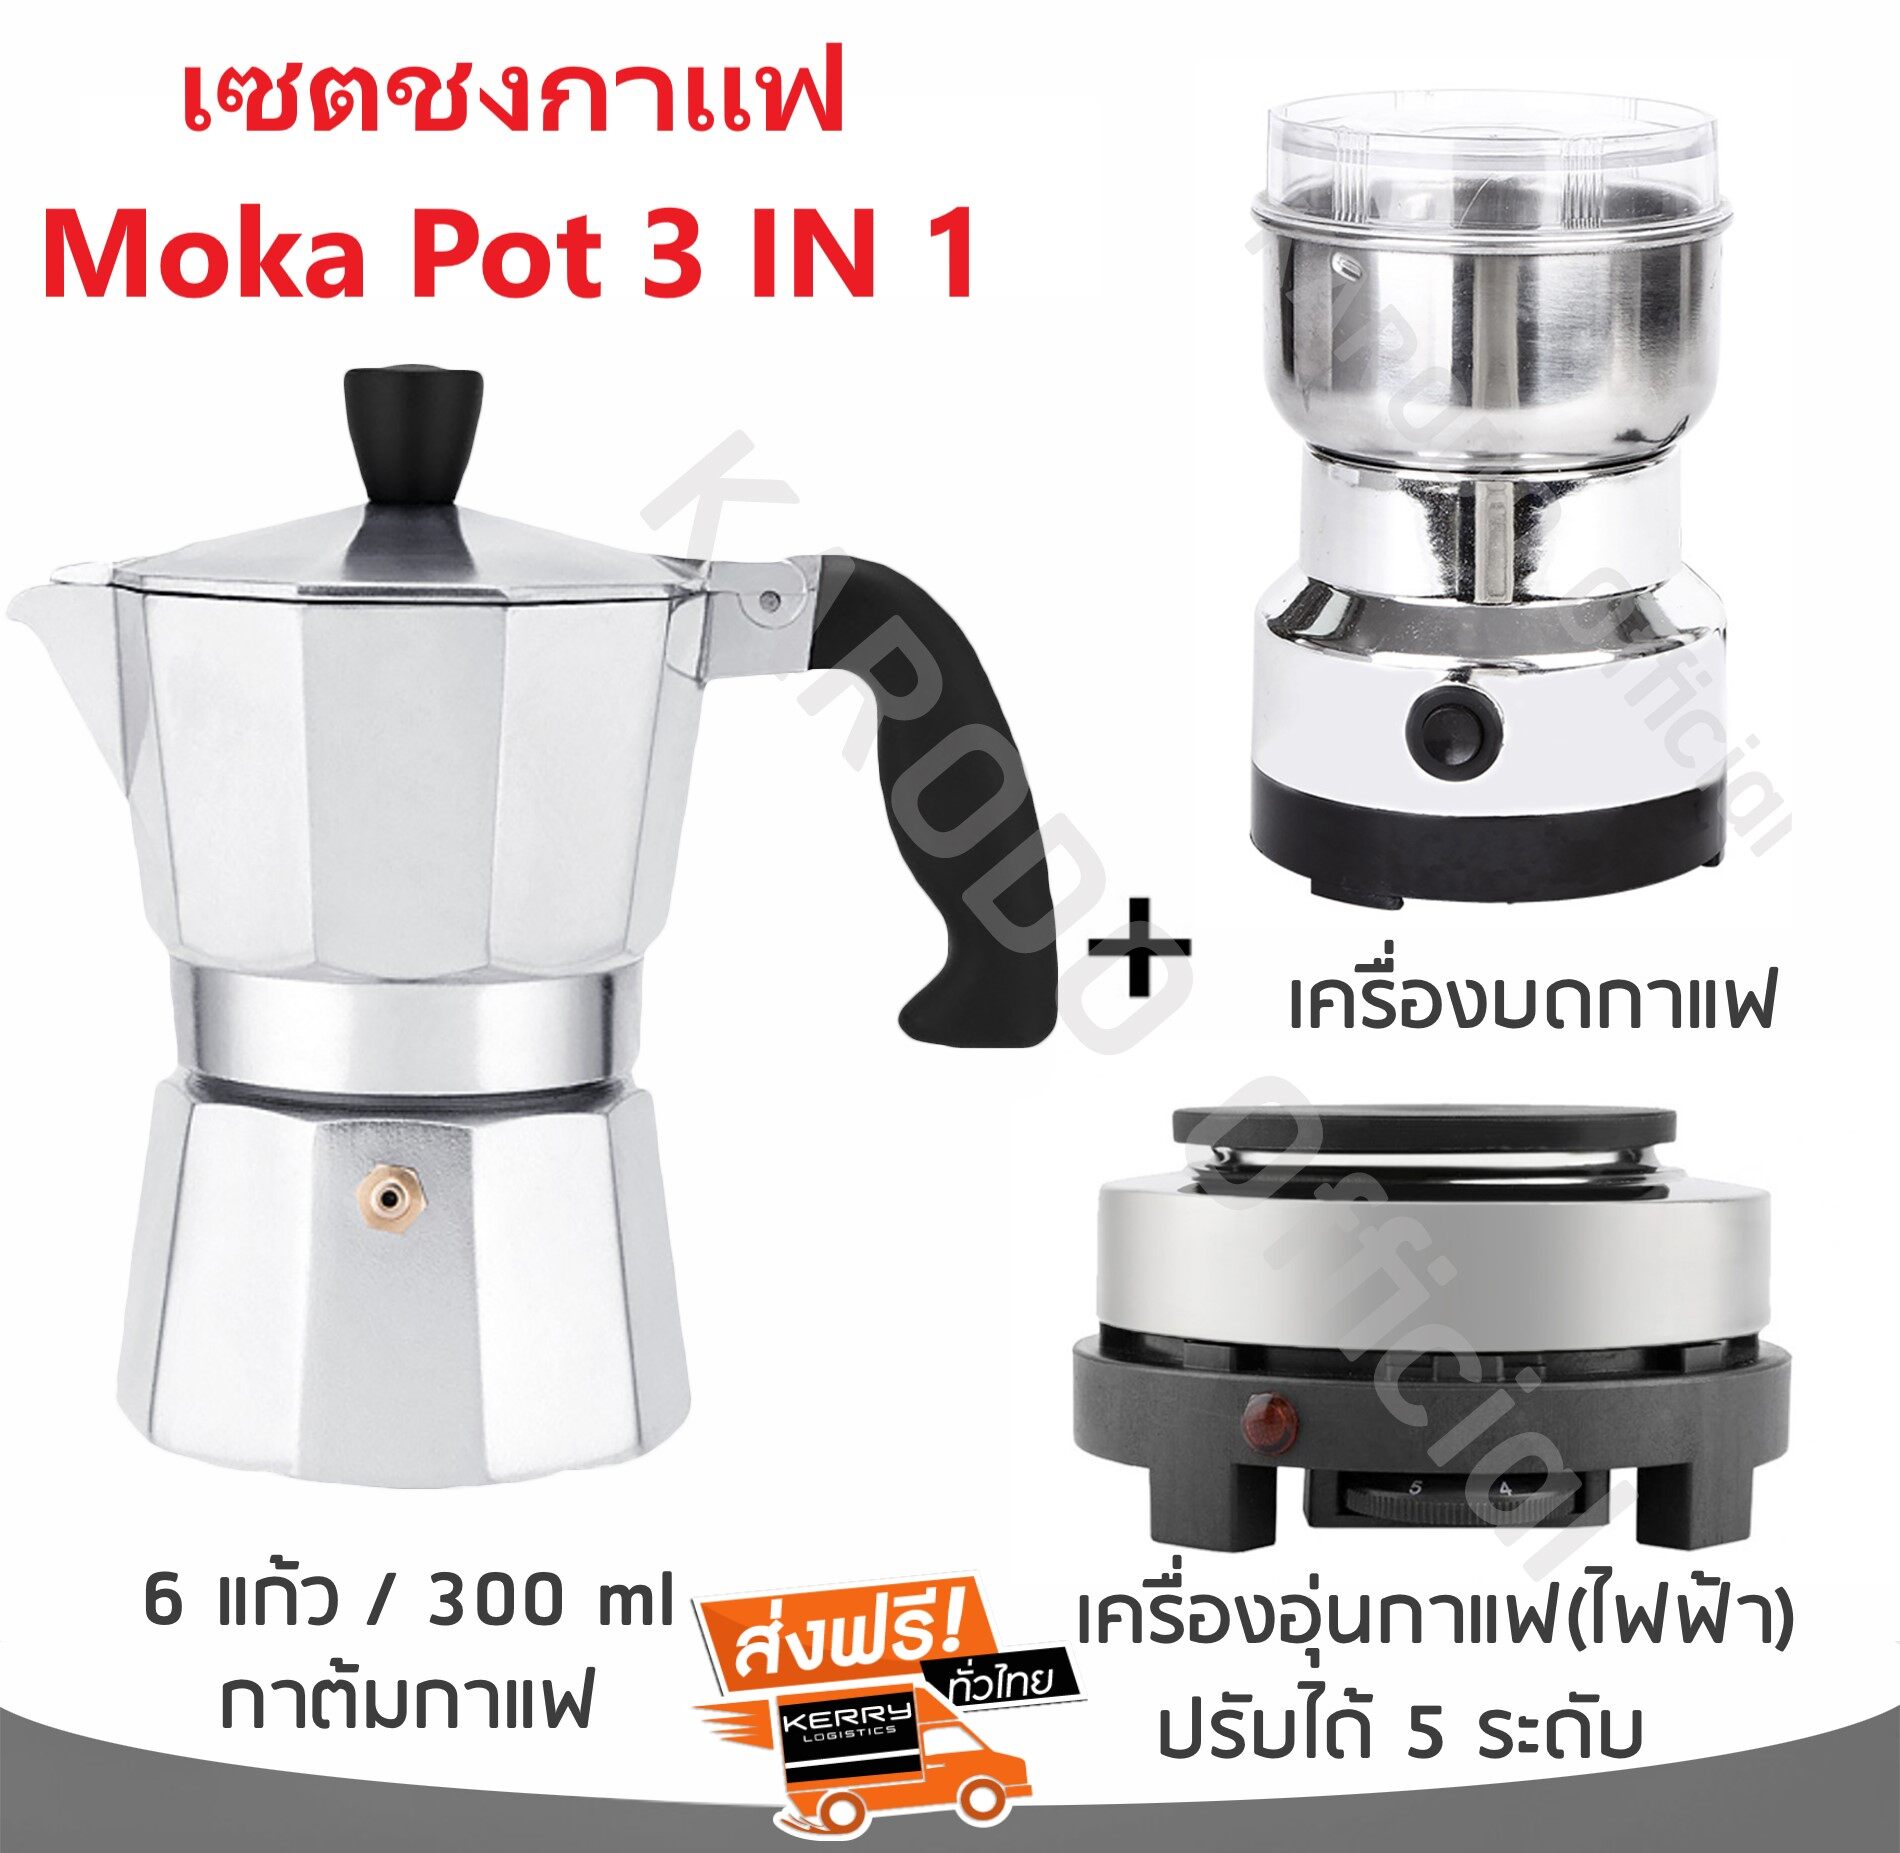 เซตทำกาแฟ moka pot 3in1 สำหรับ 6 ถ้วย/300 ml (รวมอุปกรณ์ 3 ชิ้น)